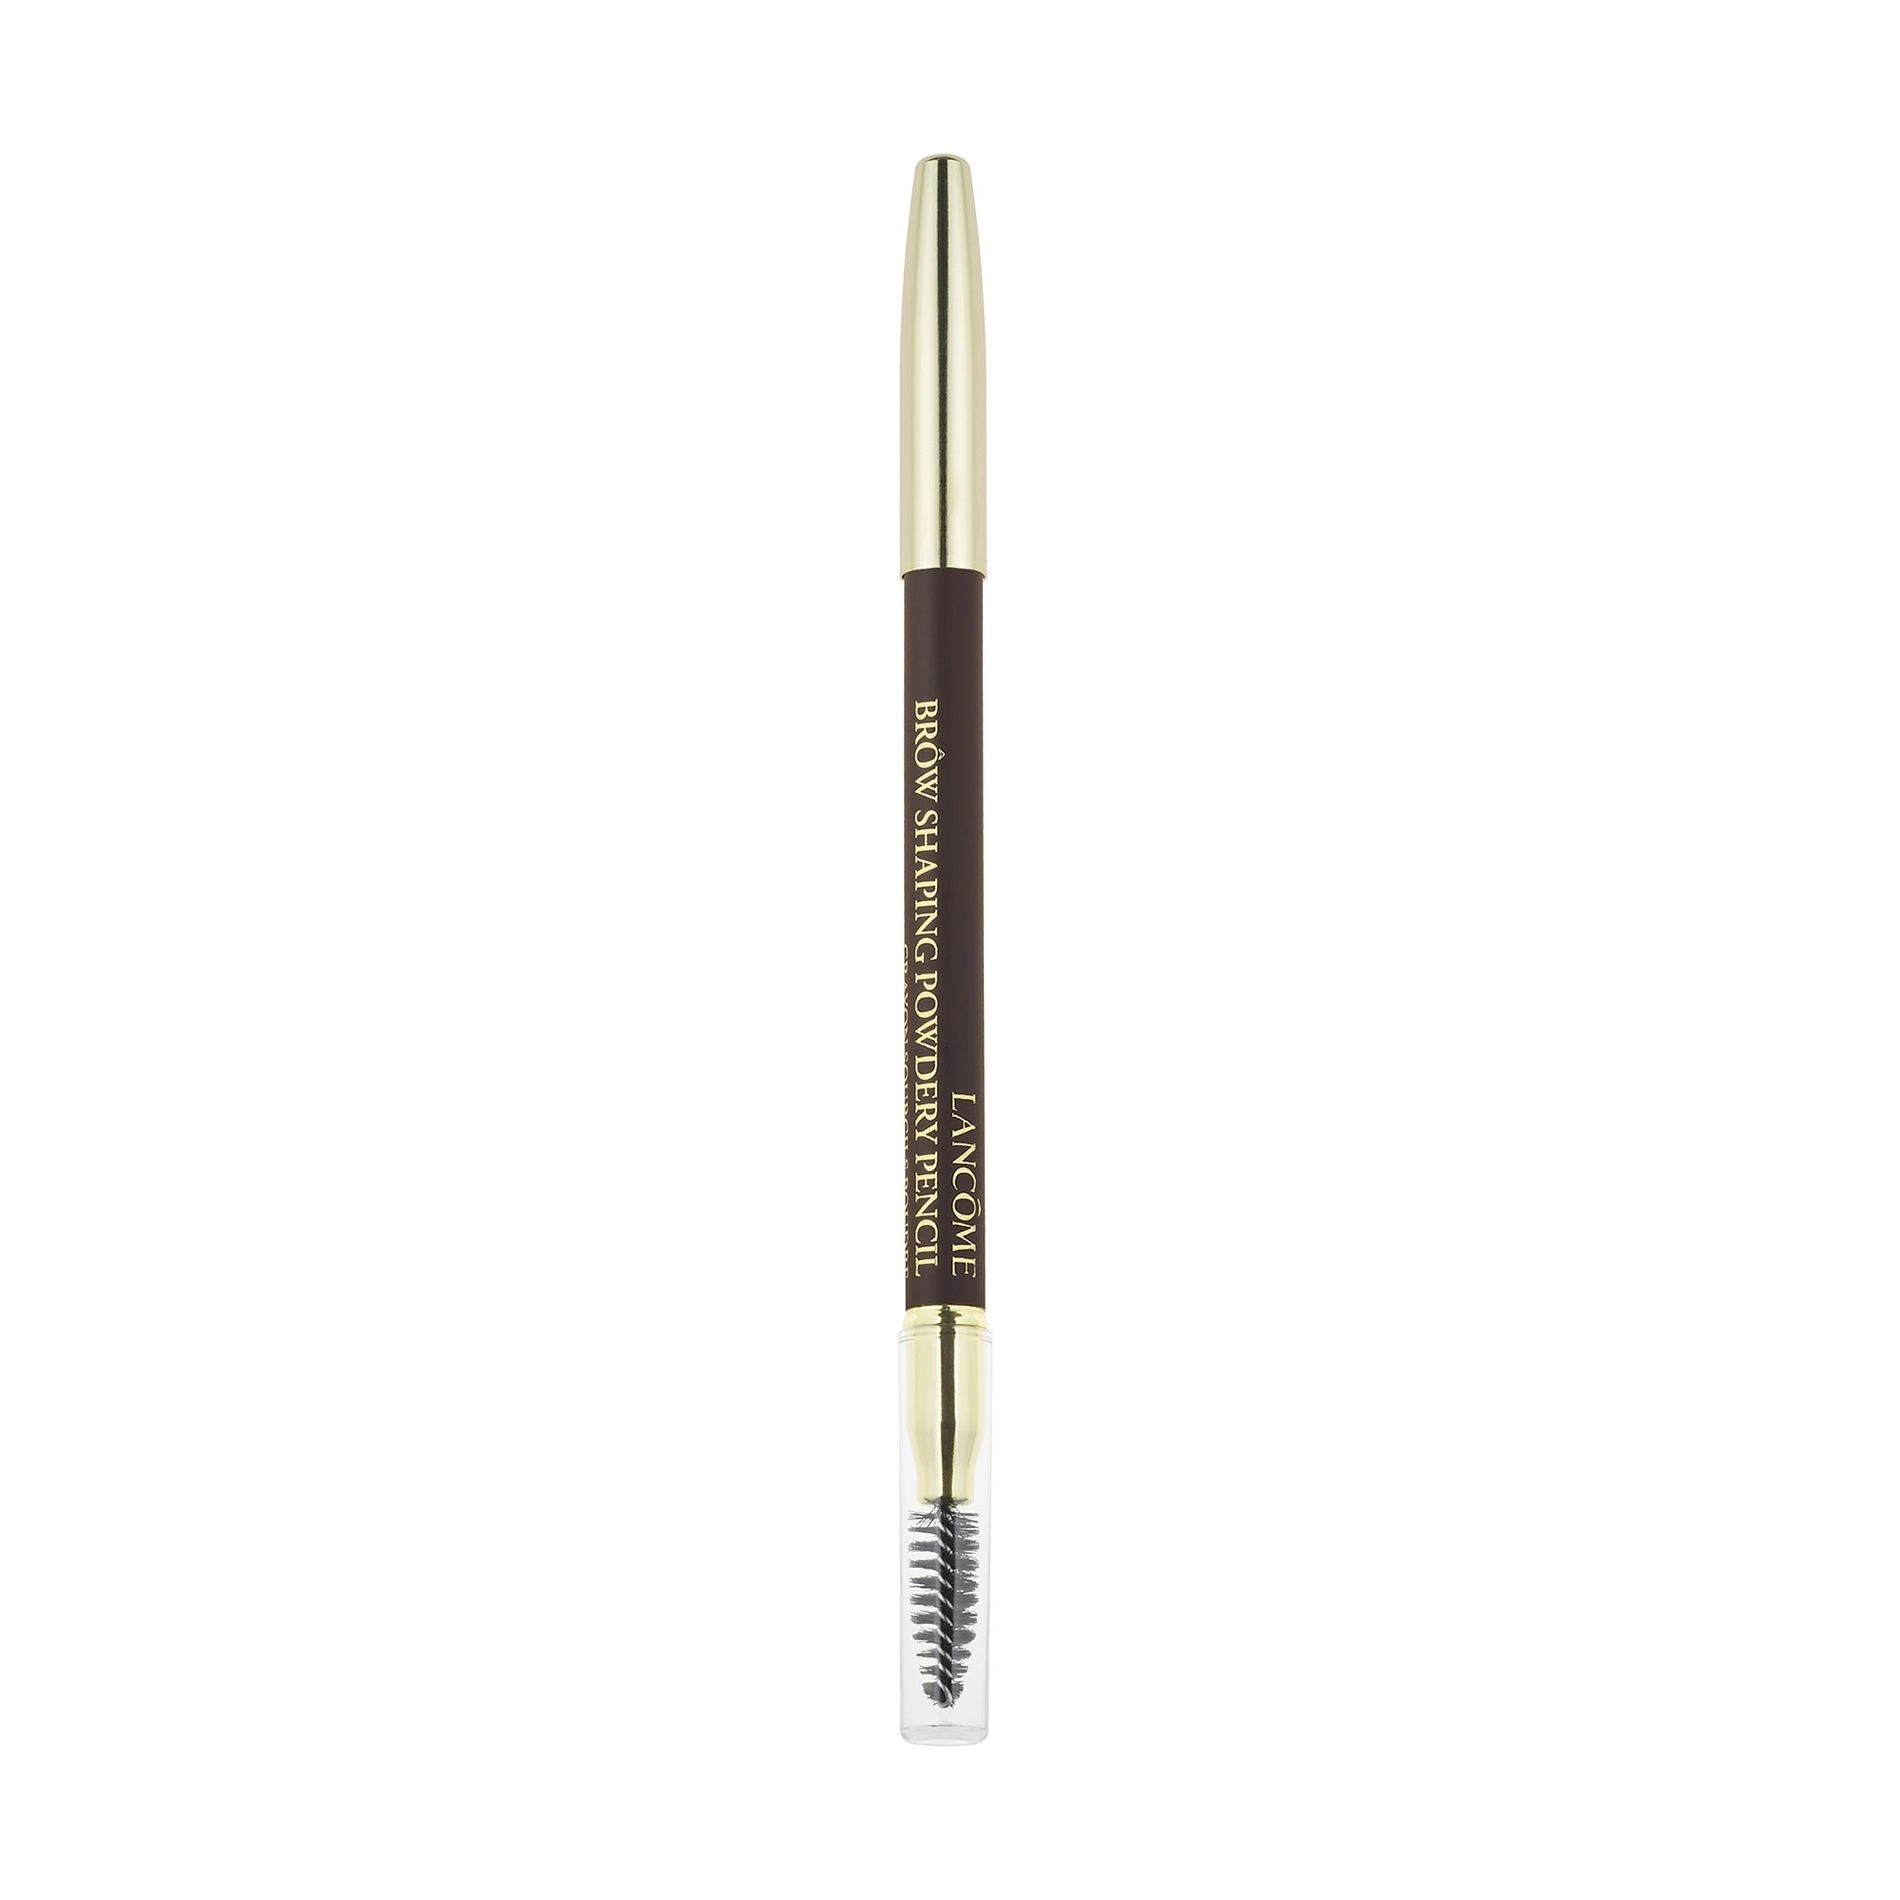 Lancome Олівець для брів Brow Shaping Powdery Pencil 08 Dark Brown, 1.19 г - фото N1